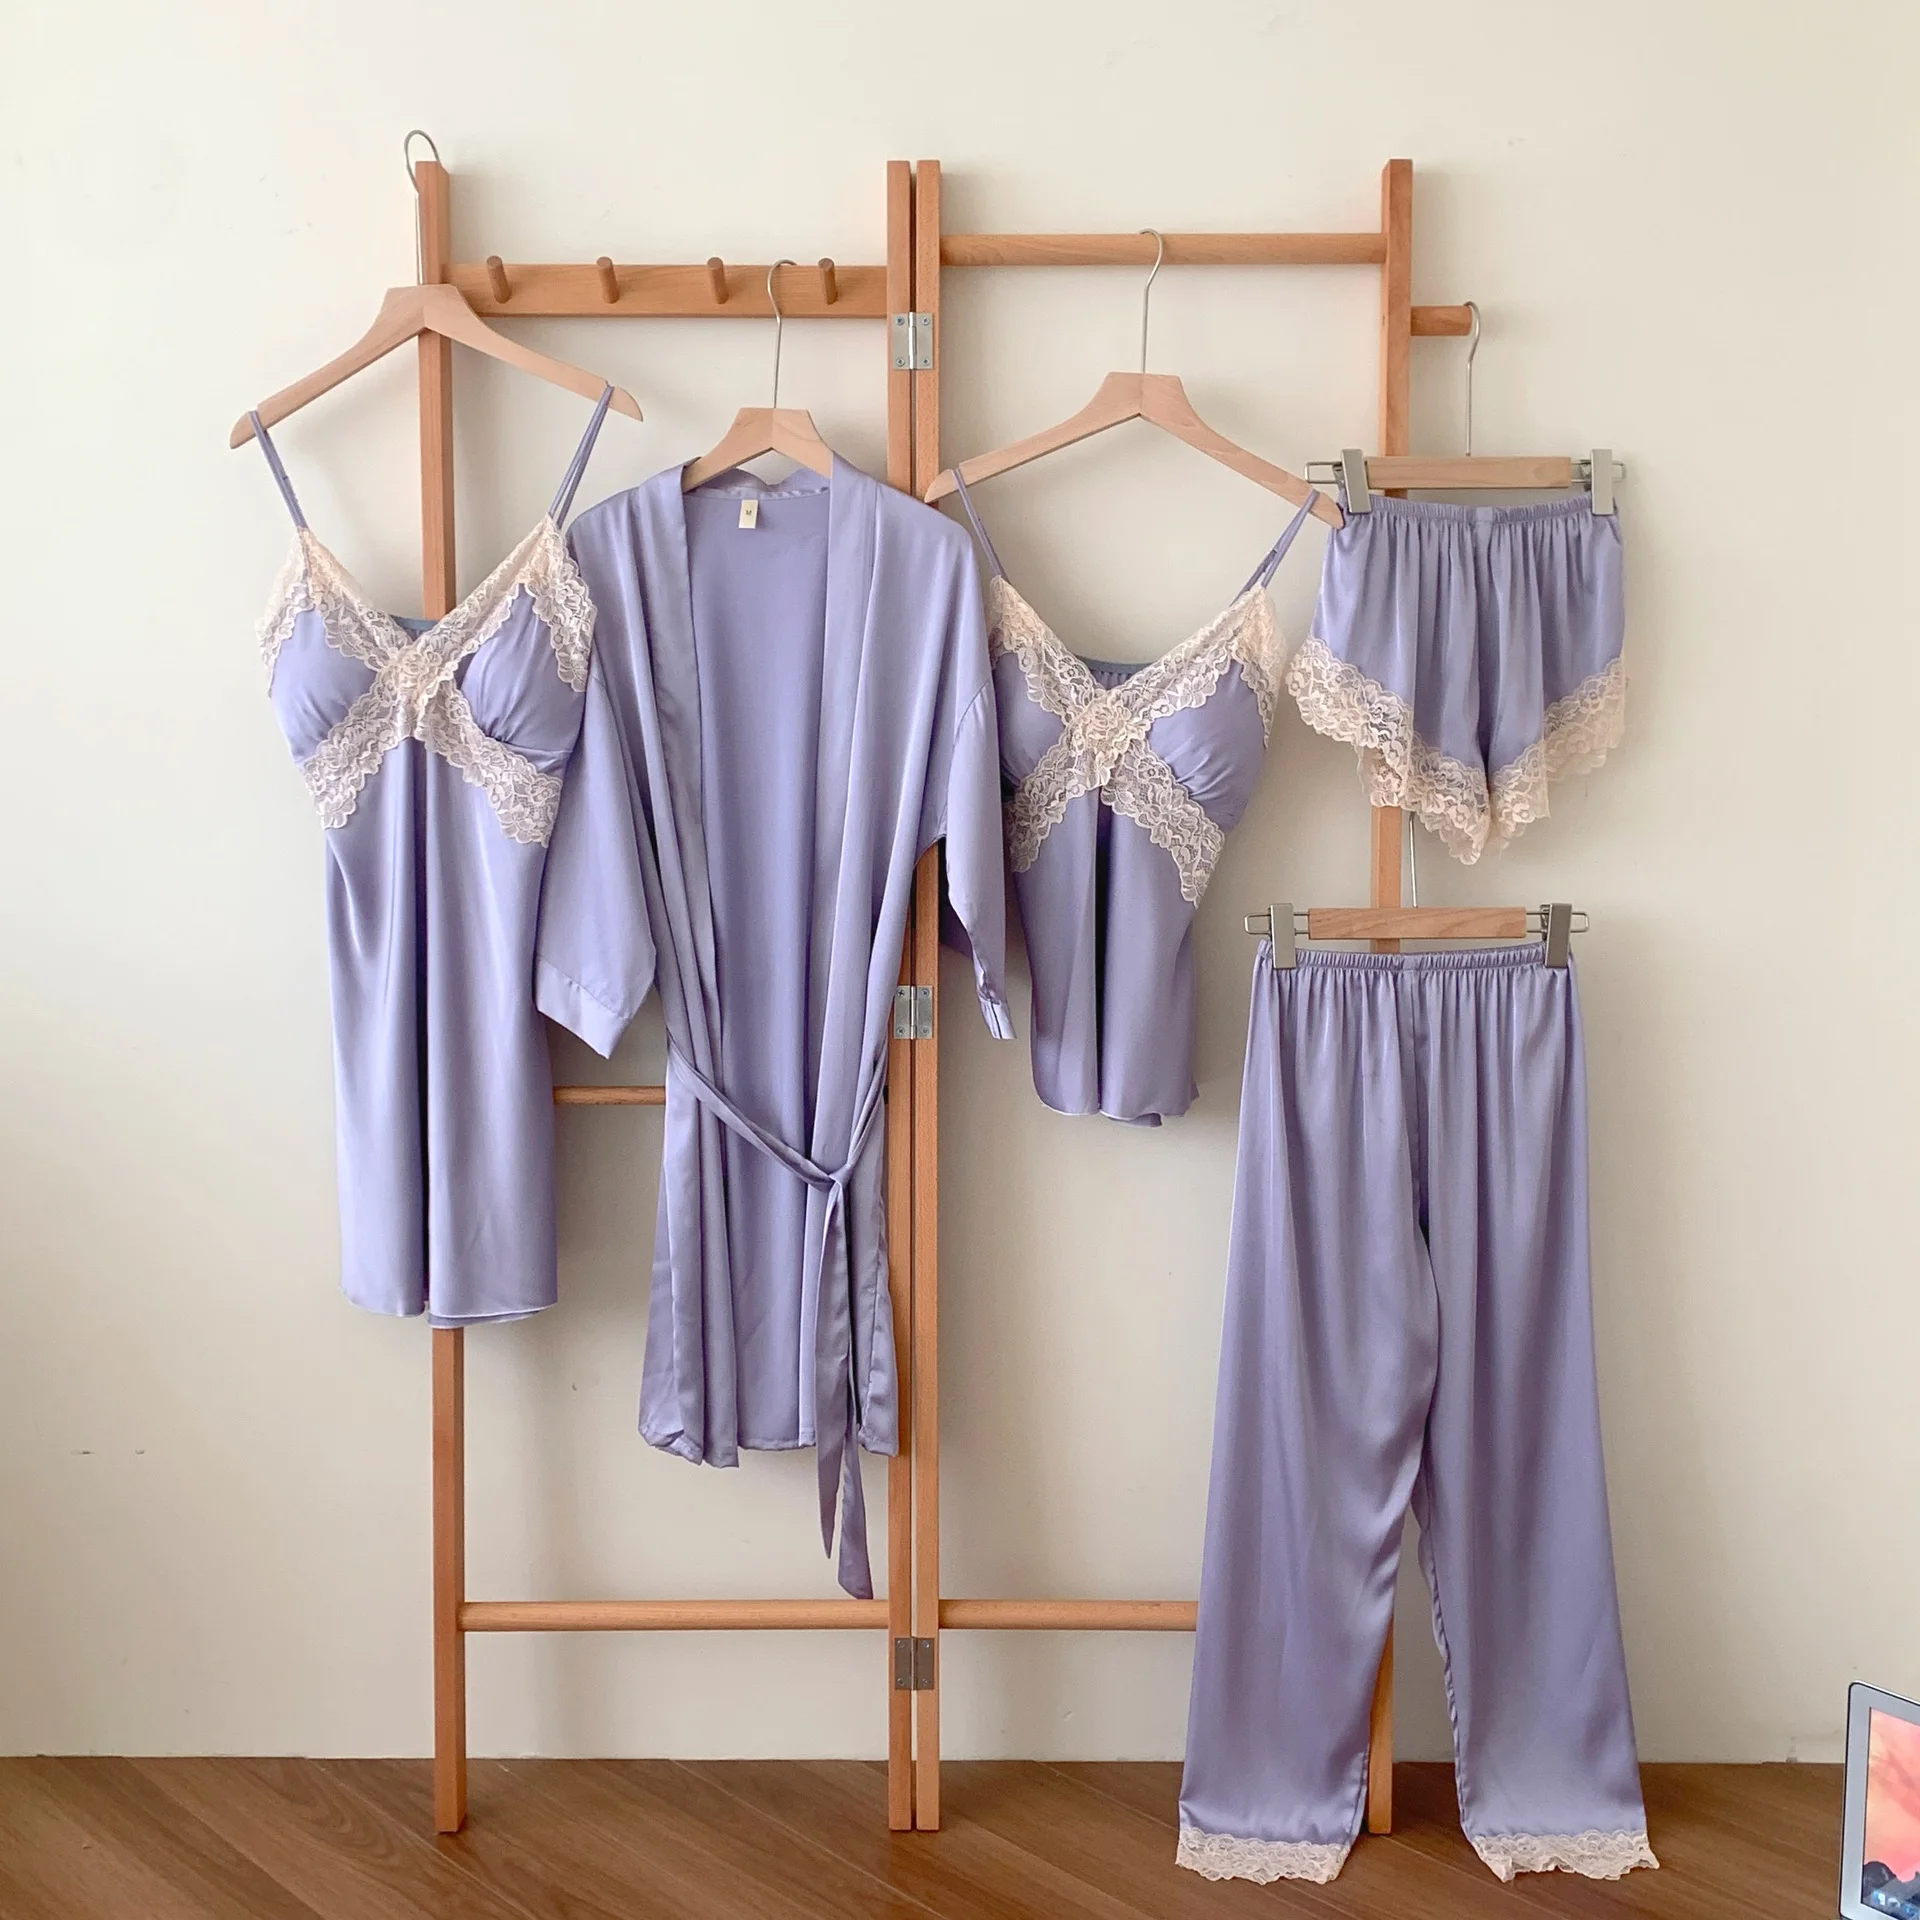 

Пижамный комплект для сна из 5 предметов, сексуальный кружевной халат, ночная рубашка, домашняя одежда, женская одежда для сна, шорты на бретельках, брюки, пижама, костюм, атласное нижнее белье